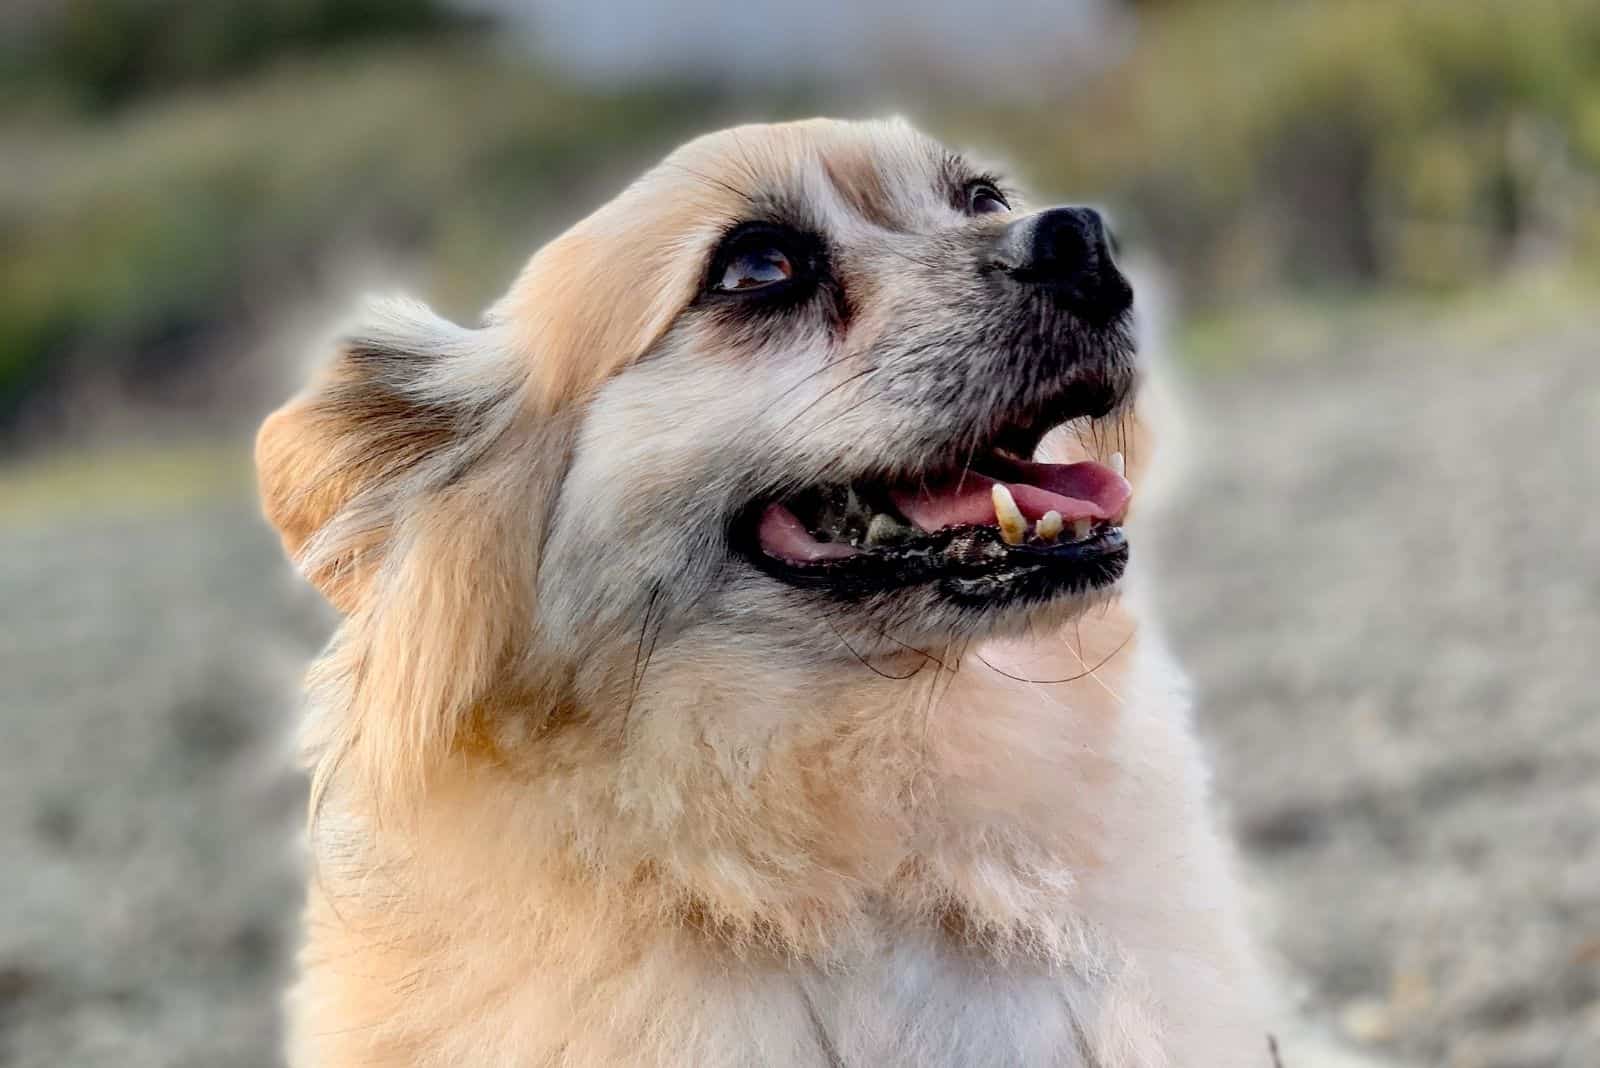 adorable corgipomeranian dog looking up in closeup image